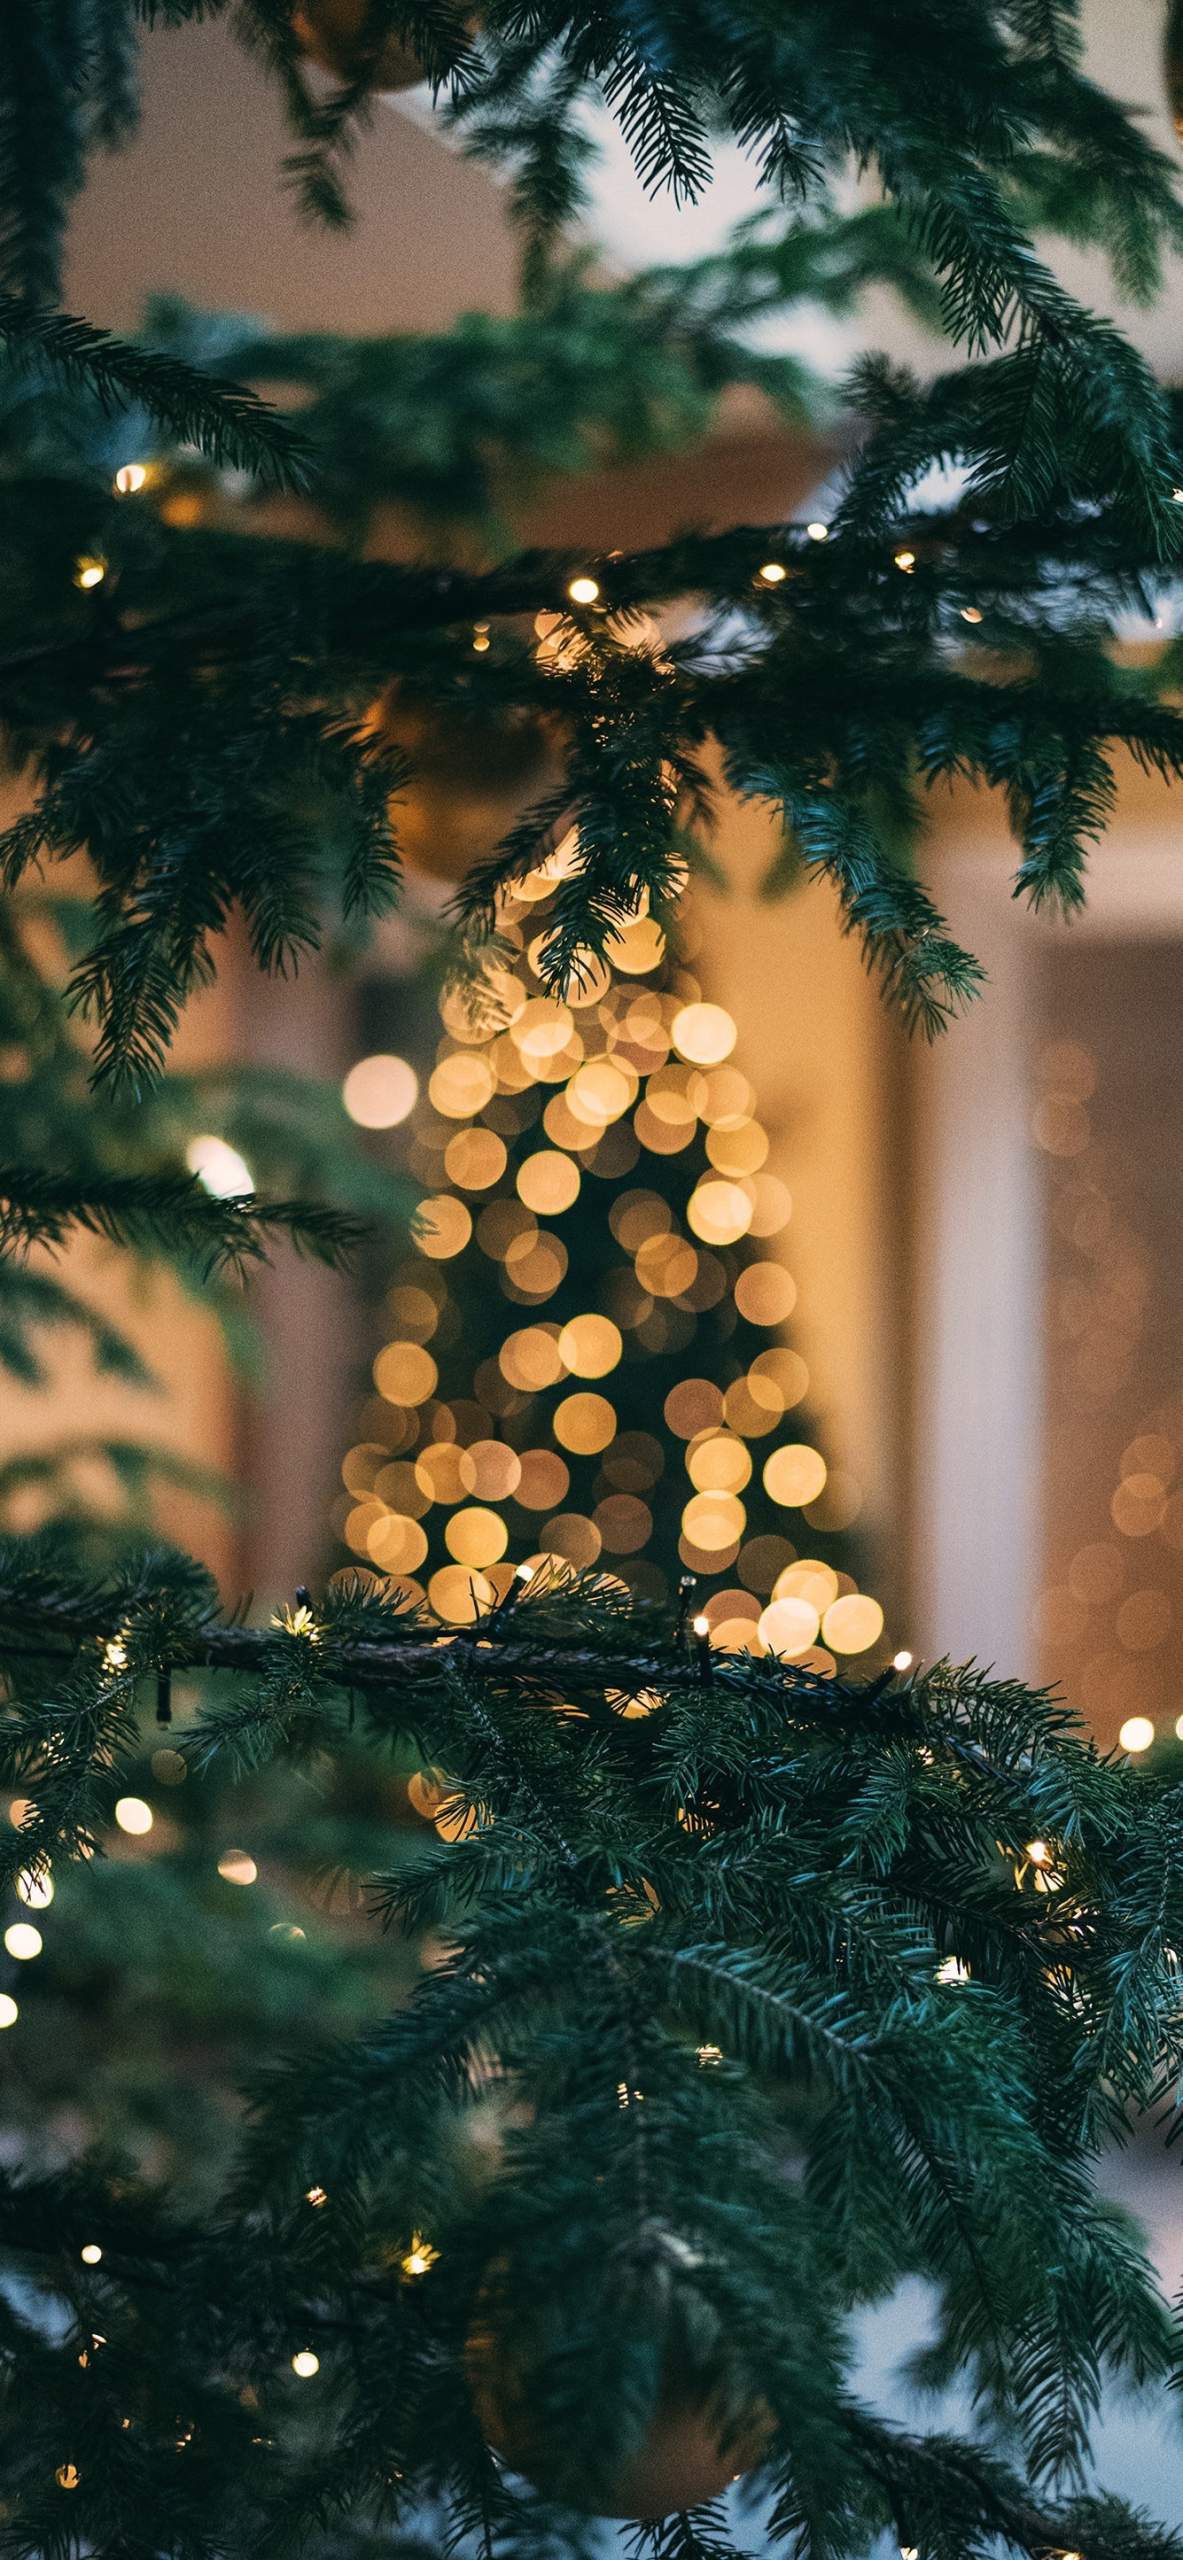 Những bức ảnh nền Giáng Sinh 2019 dành cho smartphone sẽ là điểm nhấn cực kỳ đặc biệt để bạn thực sự trang trí cho thiết bị của mình vào dịp đặc biệt. Cùng ngắm nhìn những hình ảnh lộng lẫy với những tông màu ấm áp sẽ tạo cho bạn cảm giác rất thư thái và tuyệt vời!